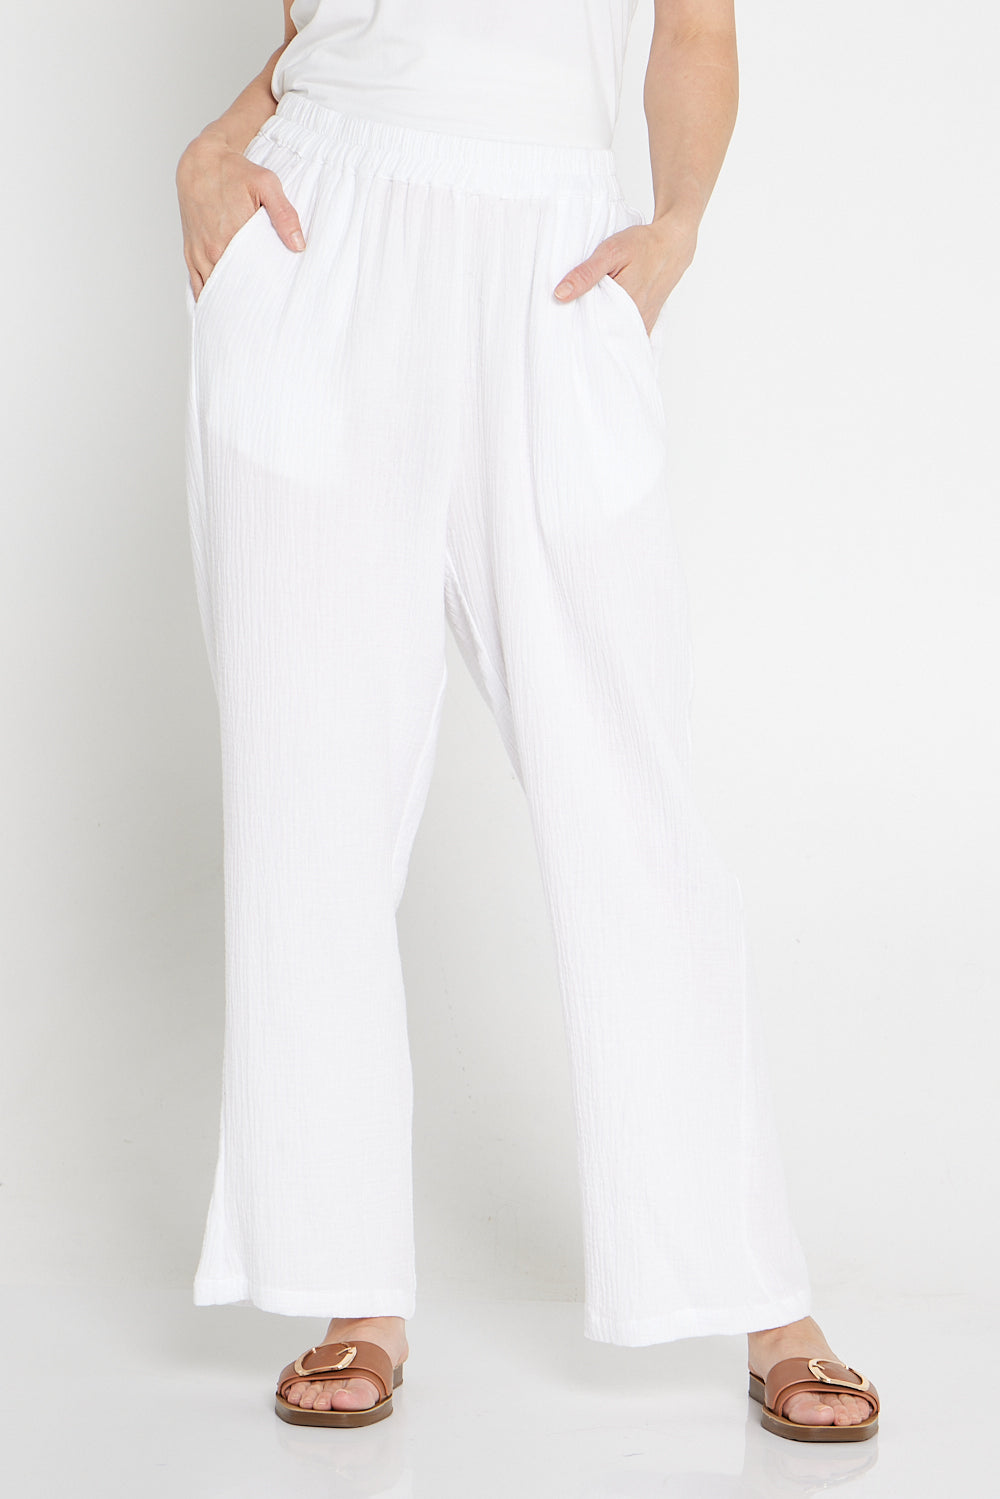 Athena Muslin Cotton Pants - White